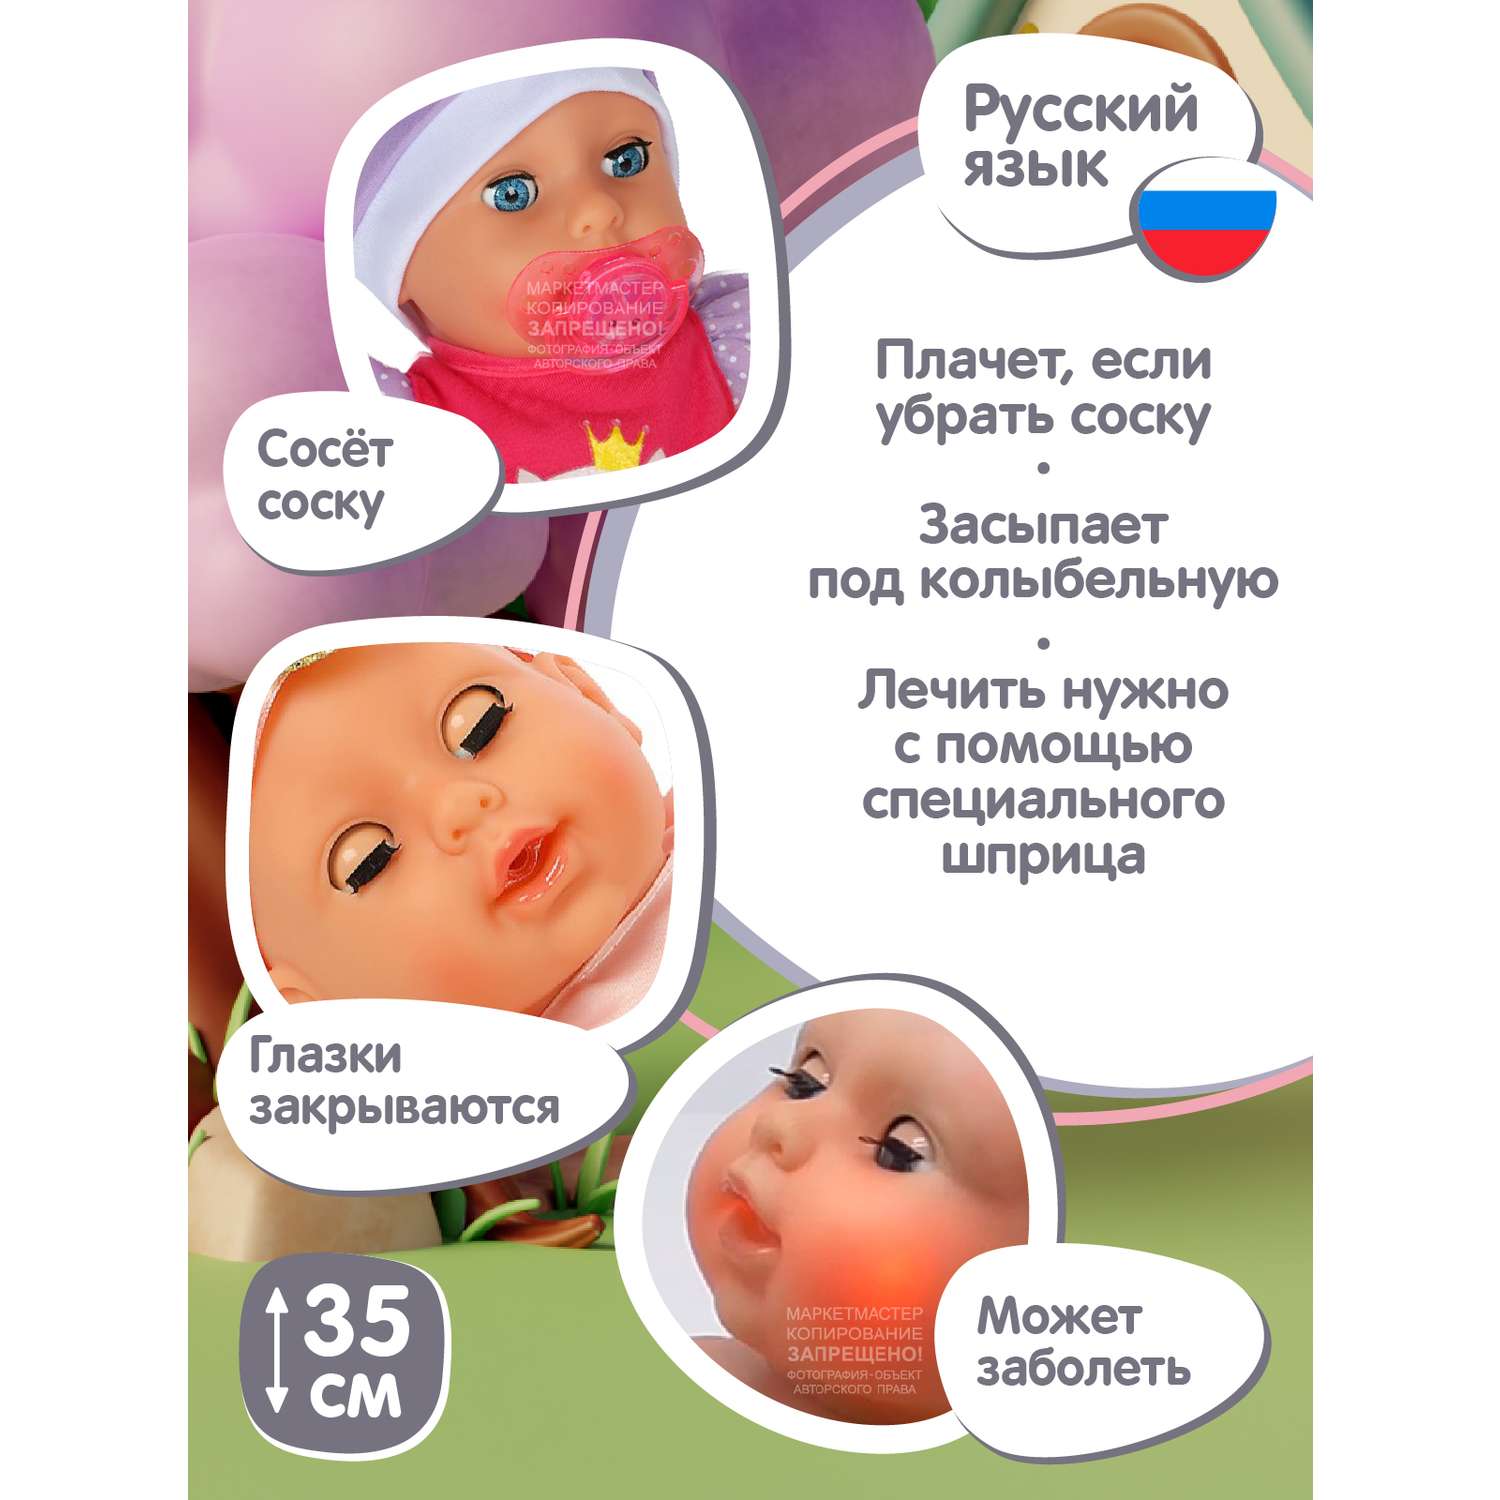 Кукла пупс AMORE BELLO интерактивный на русском языке реагирует на прикосновения пьет писает засыпает JB0211581 - фото 5